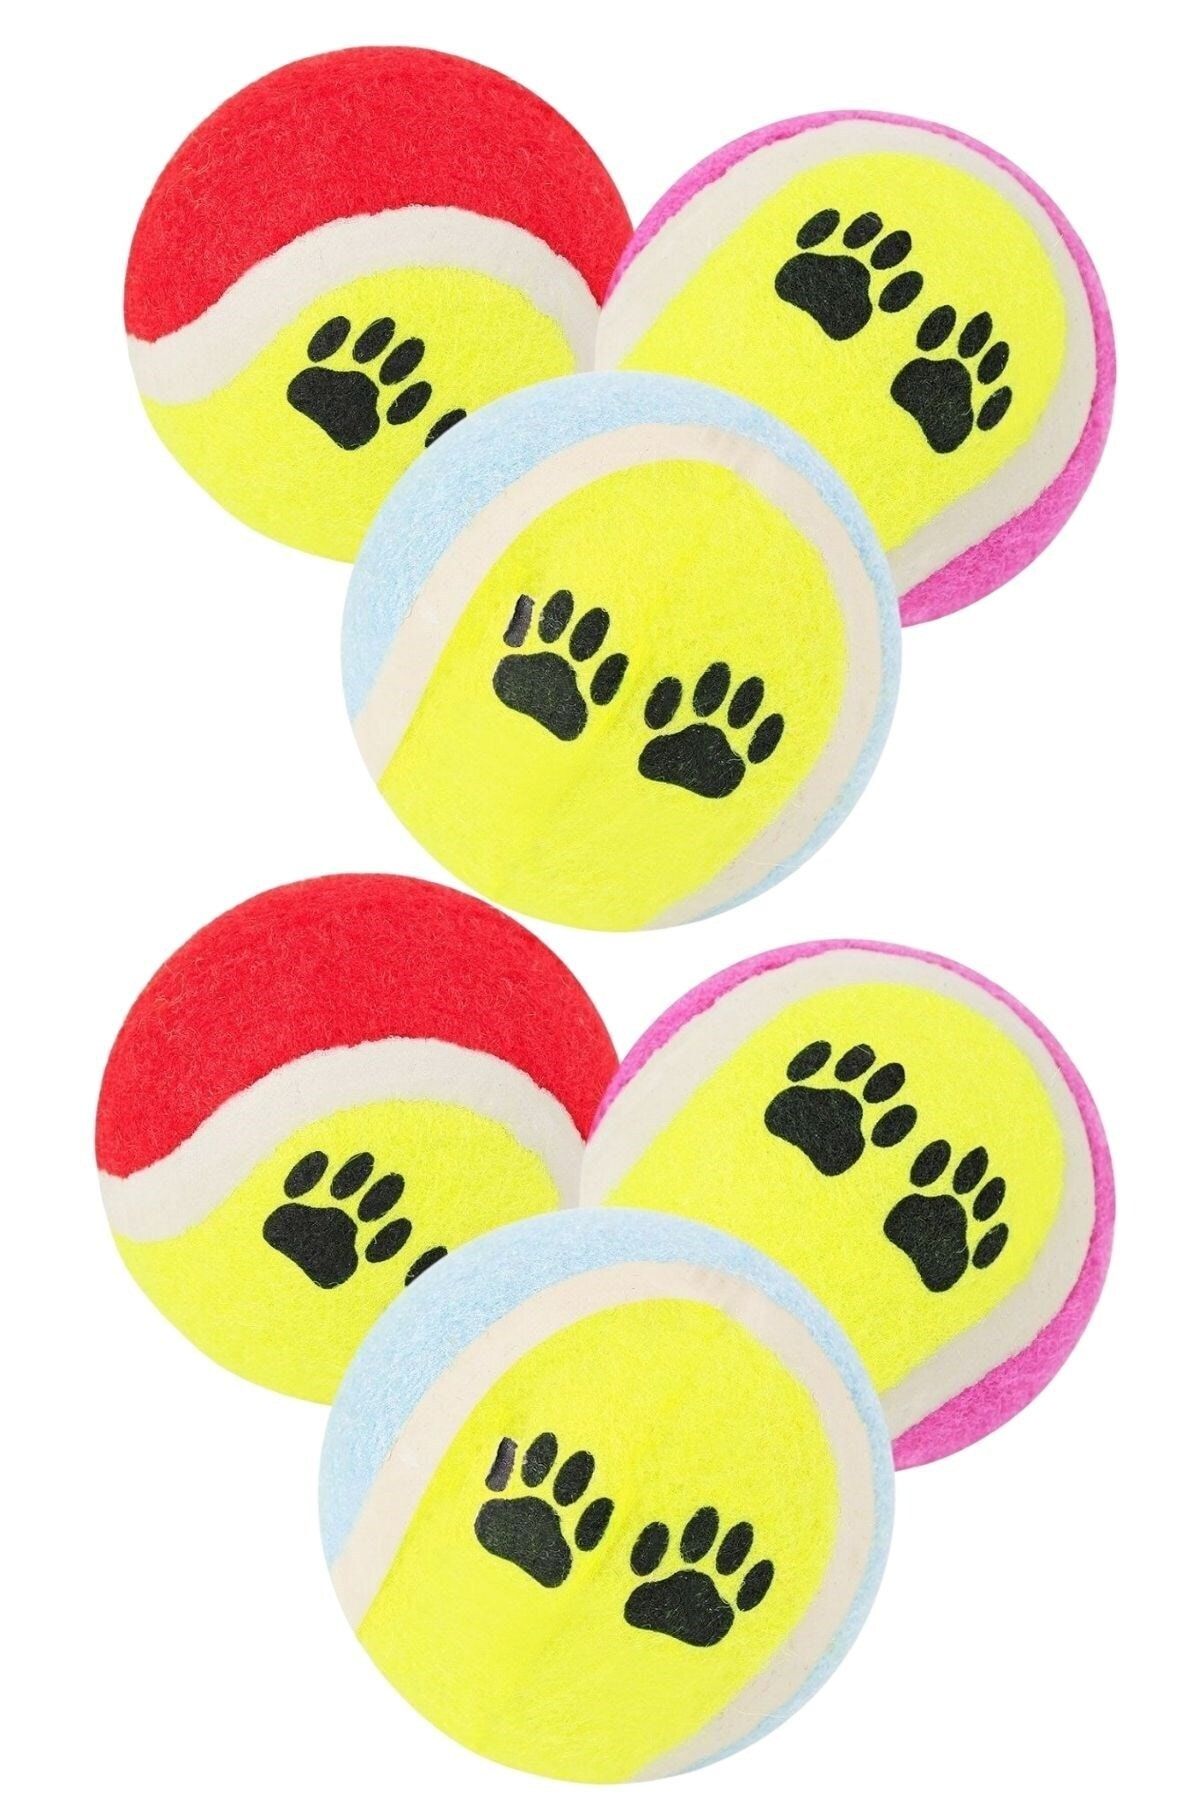 Buffer ® 6lı Renkli Desenli Tenis Topu Kedi Köpek Oyuncağı